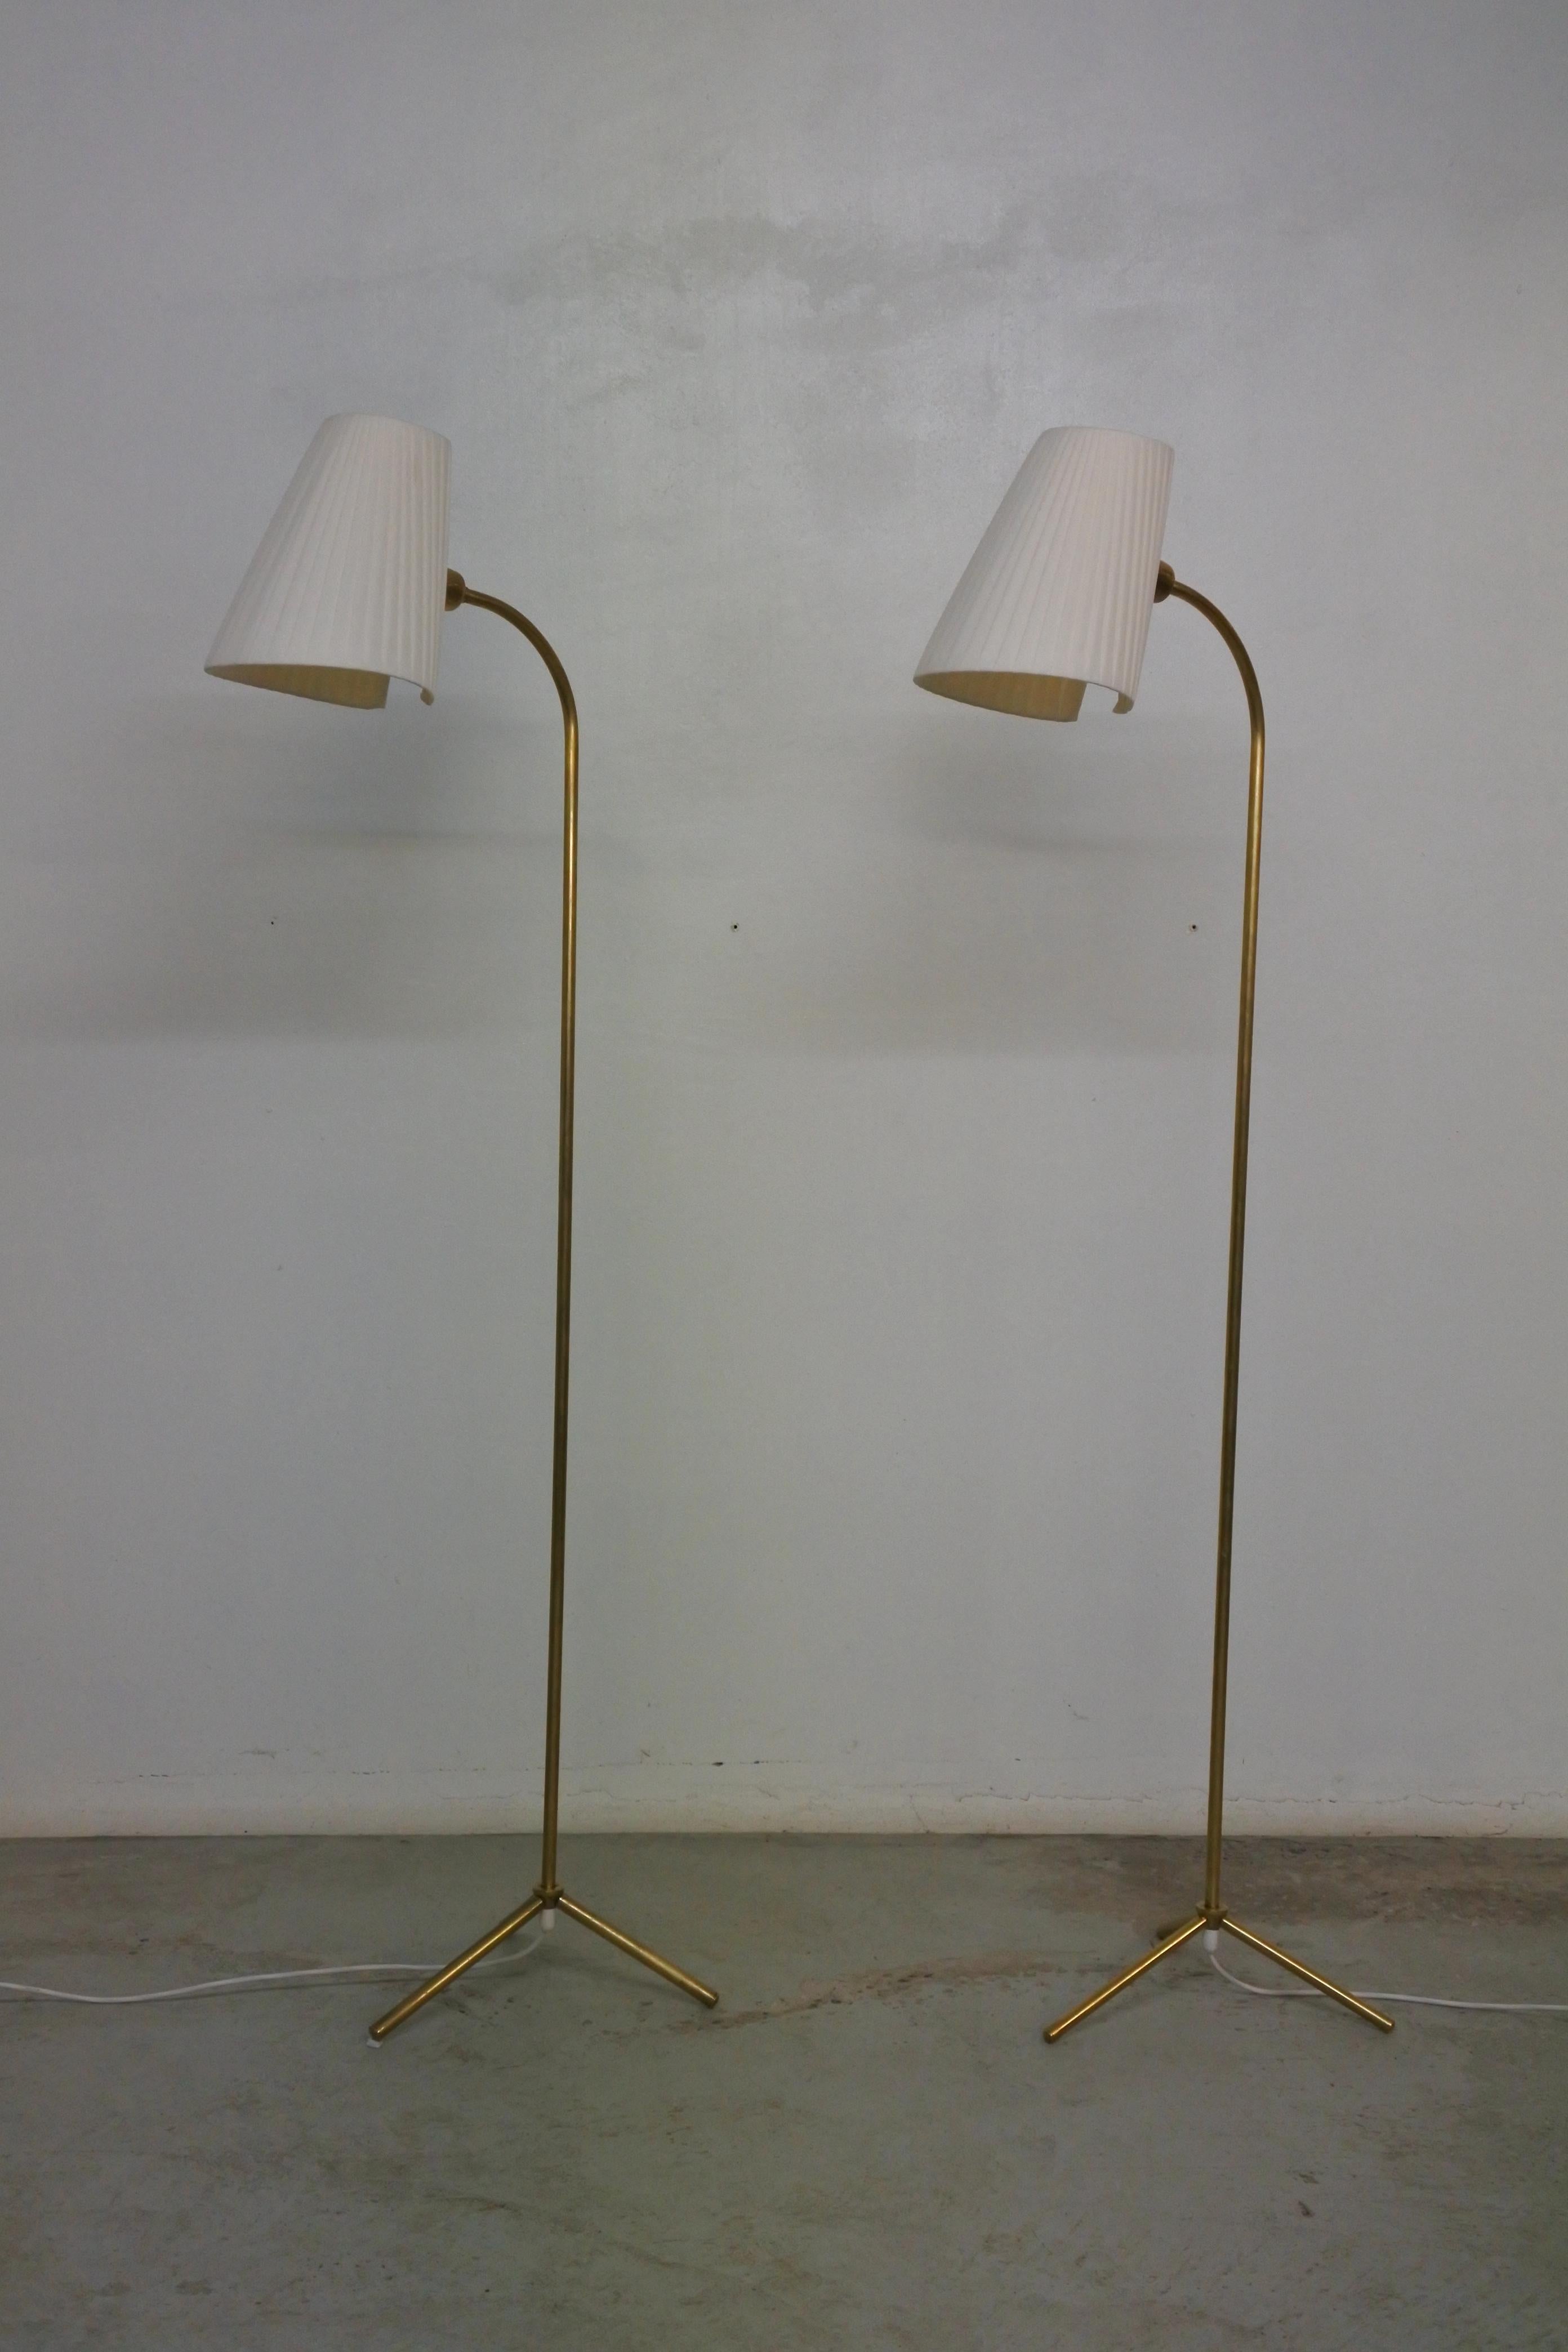 2 Dreibein-Stehlampen von Lisa Johansson Pape.
Hergestellt von Orno in den 1950er Jahren.
Stiele und Füße aus massivem Messing, Seidenschirme.
Die Schirme können in alle Richtungen ausgerichtet werden.

Obwohl die 2 Stehlampen die gleiche